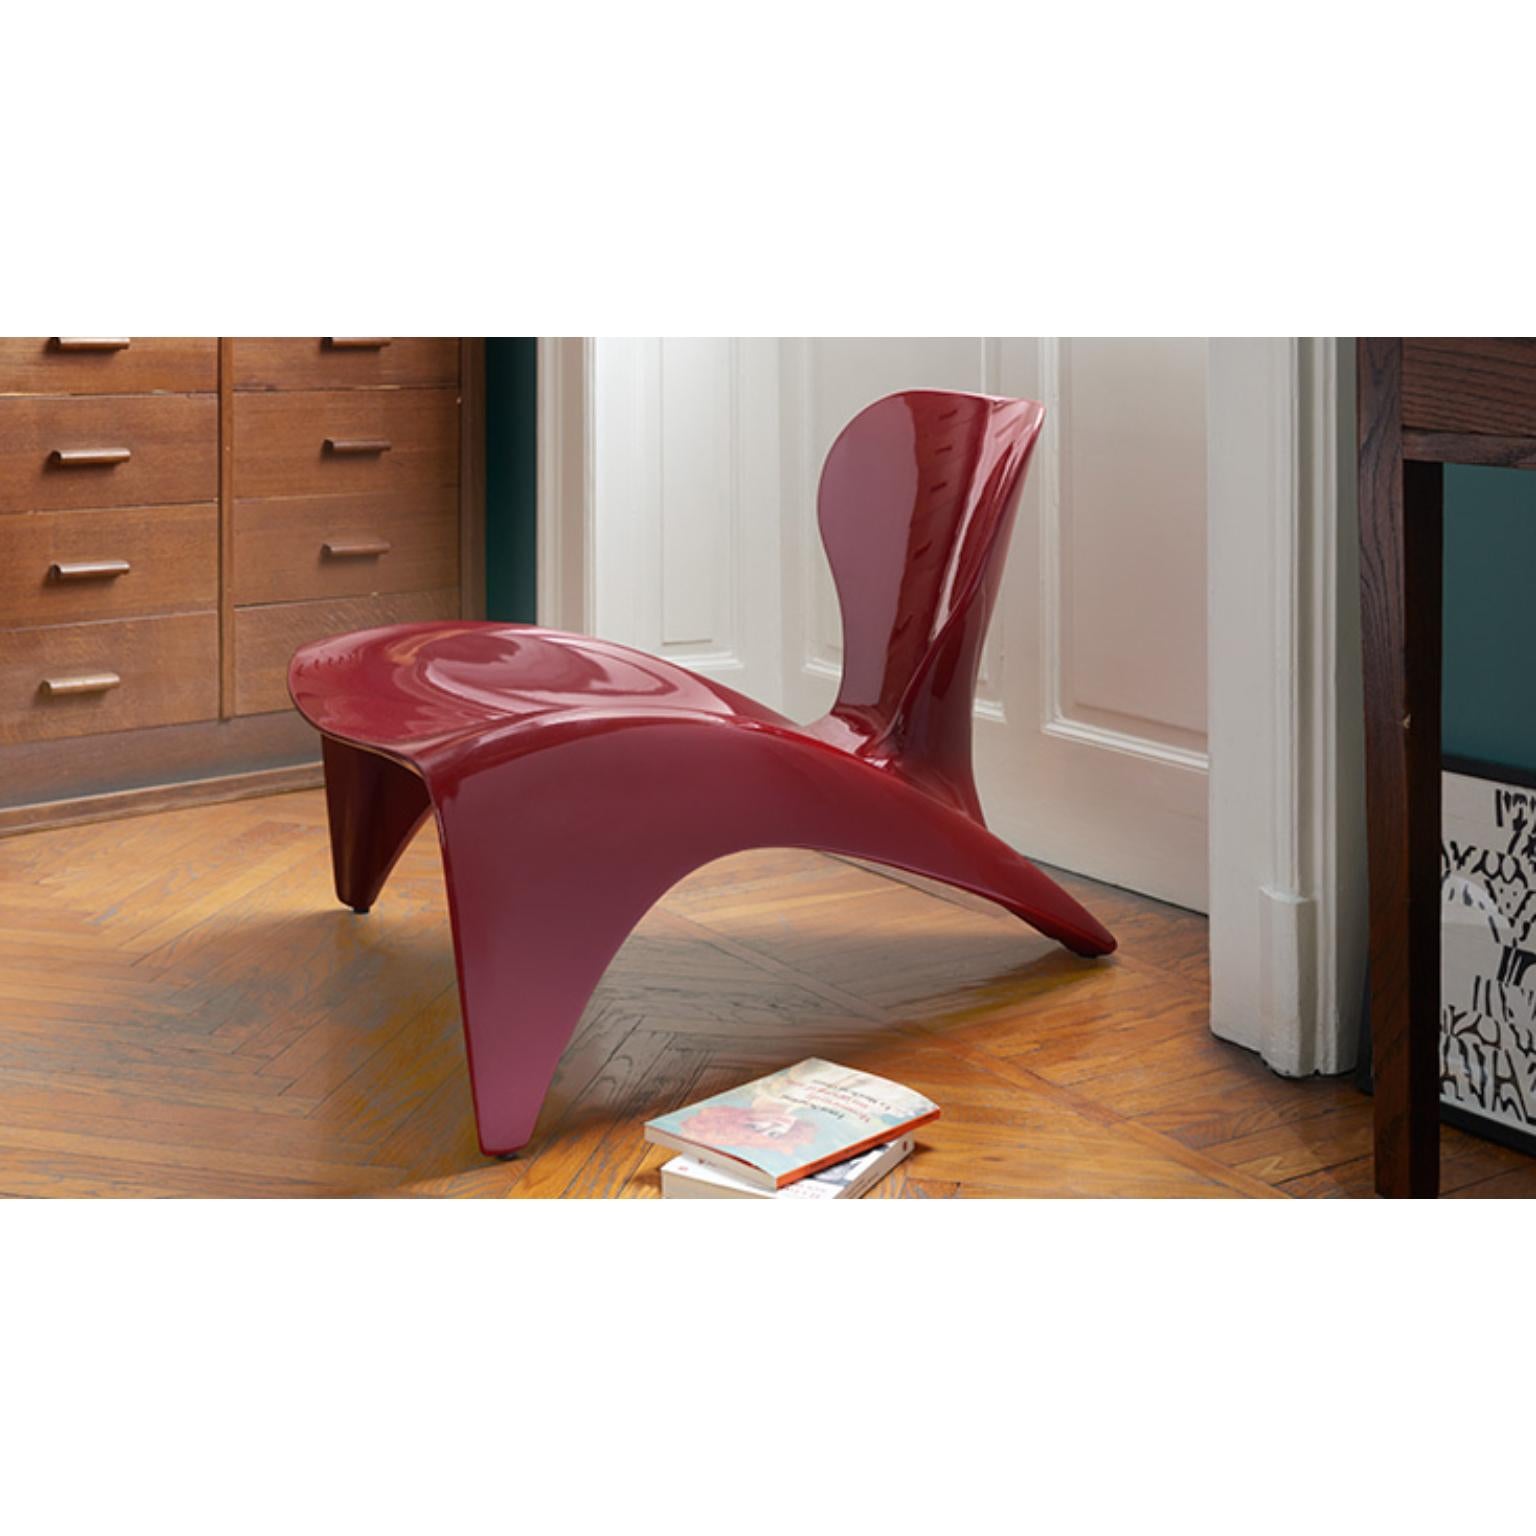 Glänzender Supreme Red Isetta Low Chair von Marc Sadler
Abmessungen: T 86 x B 78 x H 62 cm. Sitzhöhe: 32 cm.
MATERIALIEN: Polyurethan.
Gewicht: 13 kg.

Erhältlich in verschiedenen lackierten Farbvarianten. Erhältlich in glänzenden oder matten